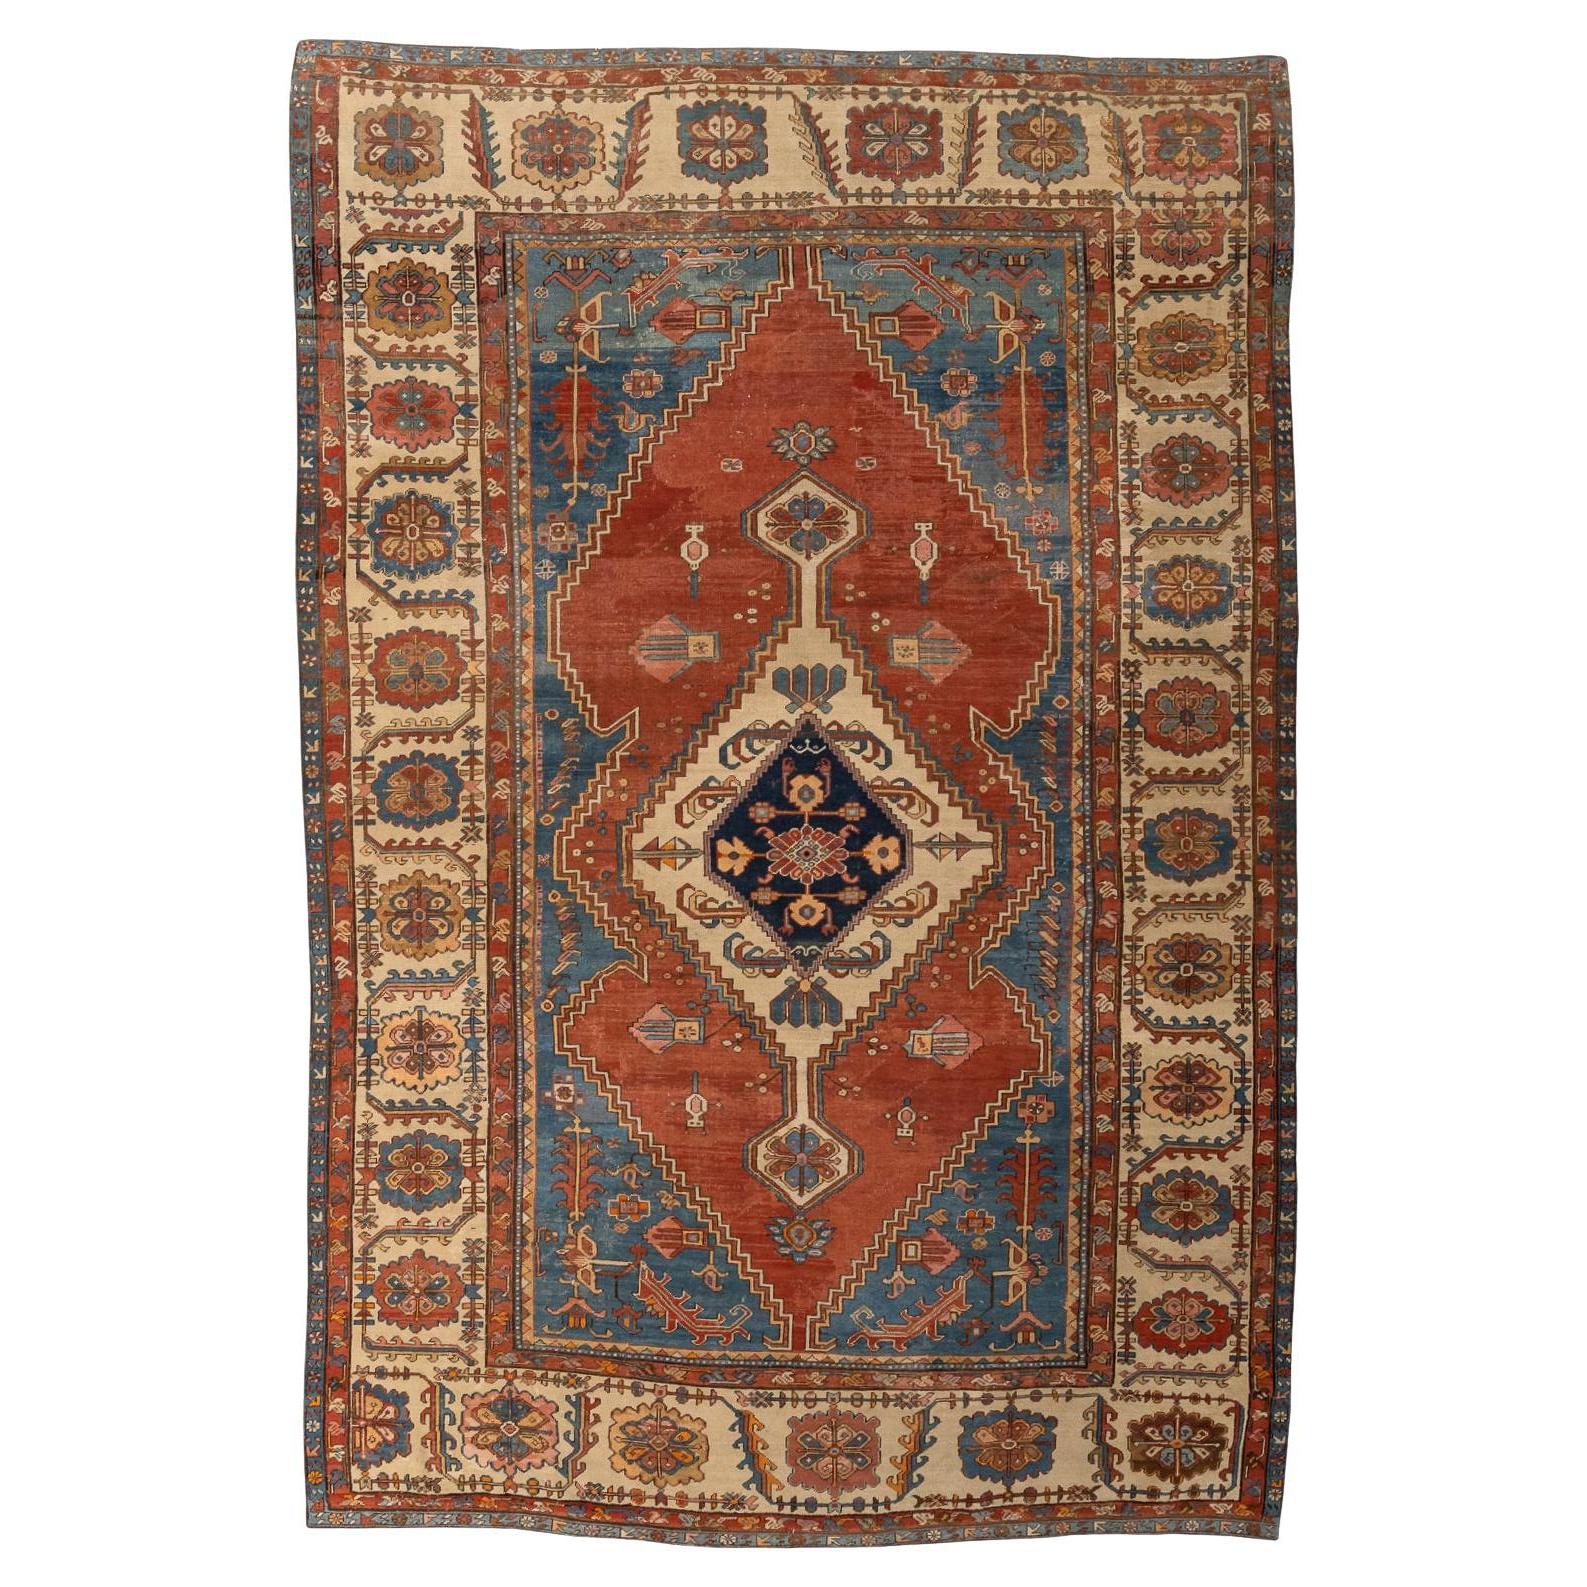 19th Century Antique Persian Serapi Carpet